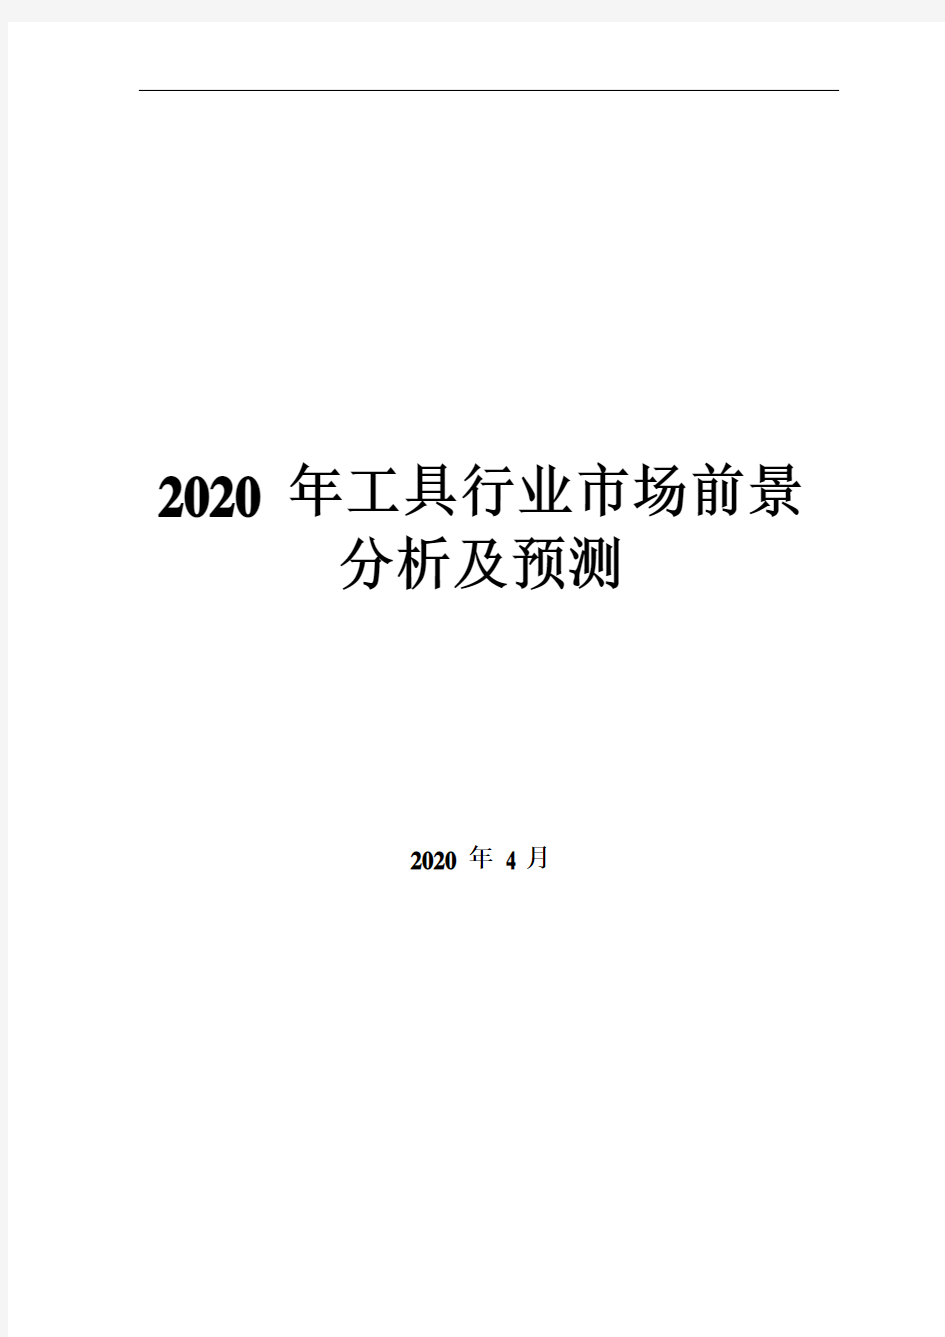 2020年工具行业市场前景分析及预测